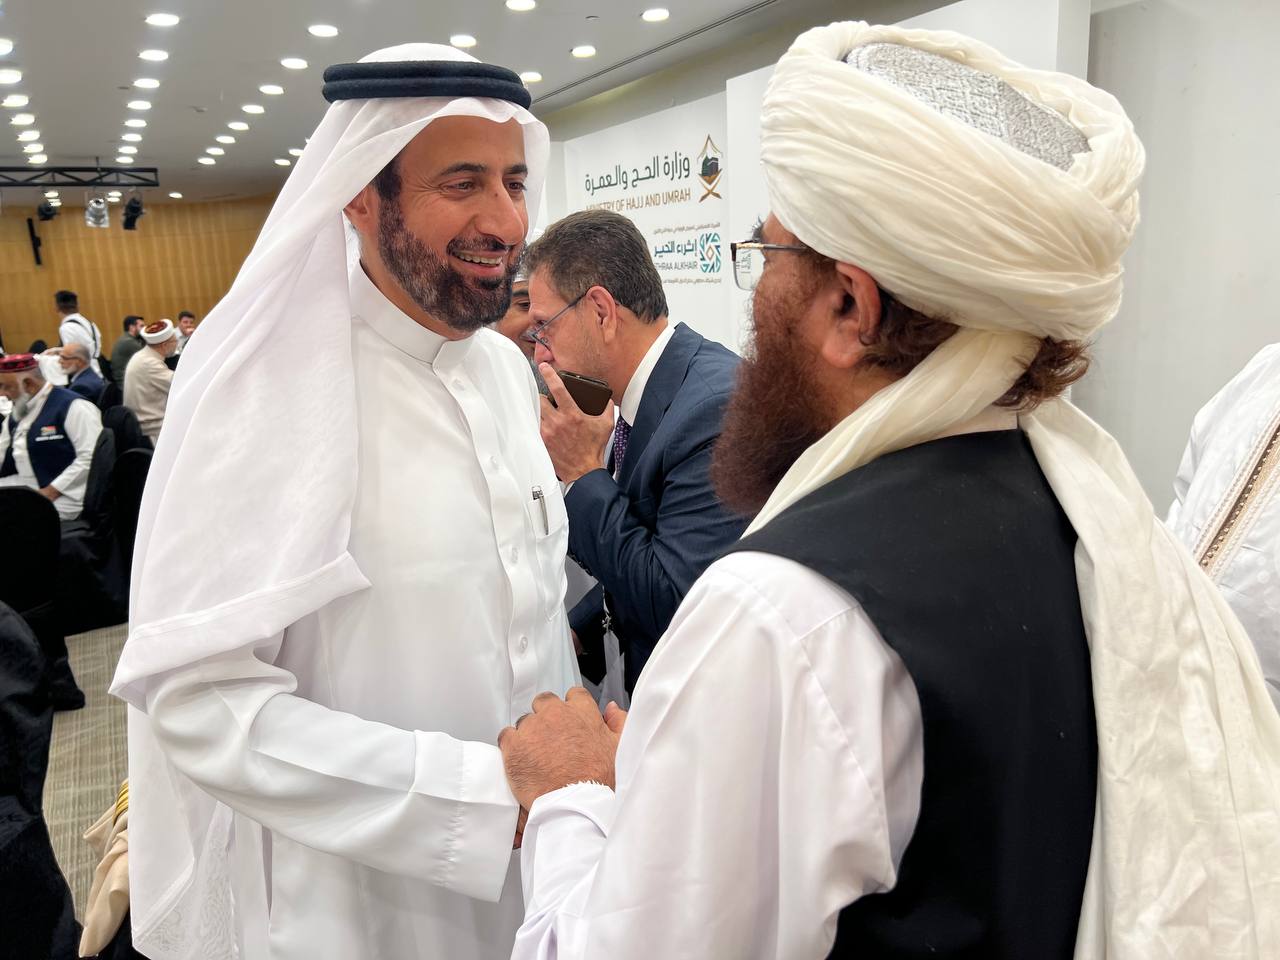 وزیر ارشاد، حج و اوقاف در کنفراس که در رابطه به حج در شهر مکه مکرمه عربستان سعودی برگزار گردیده بود اشتراک نمودند 